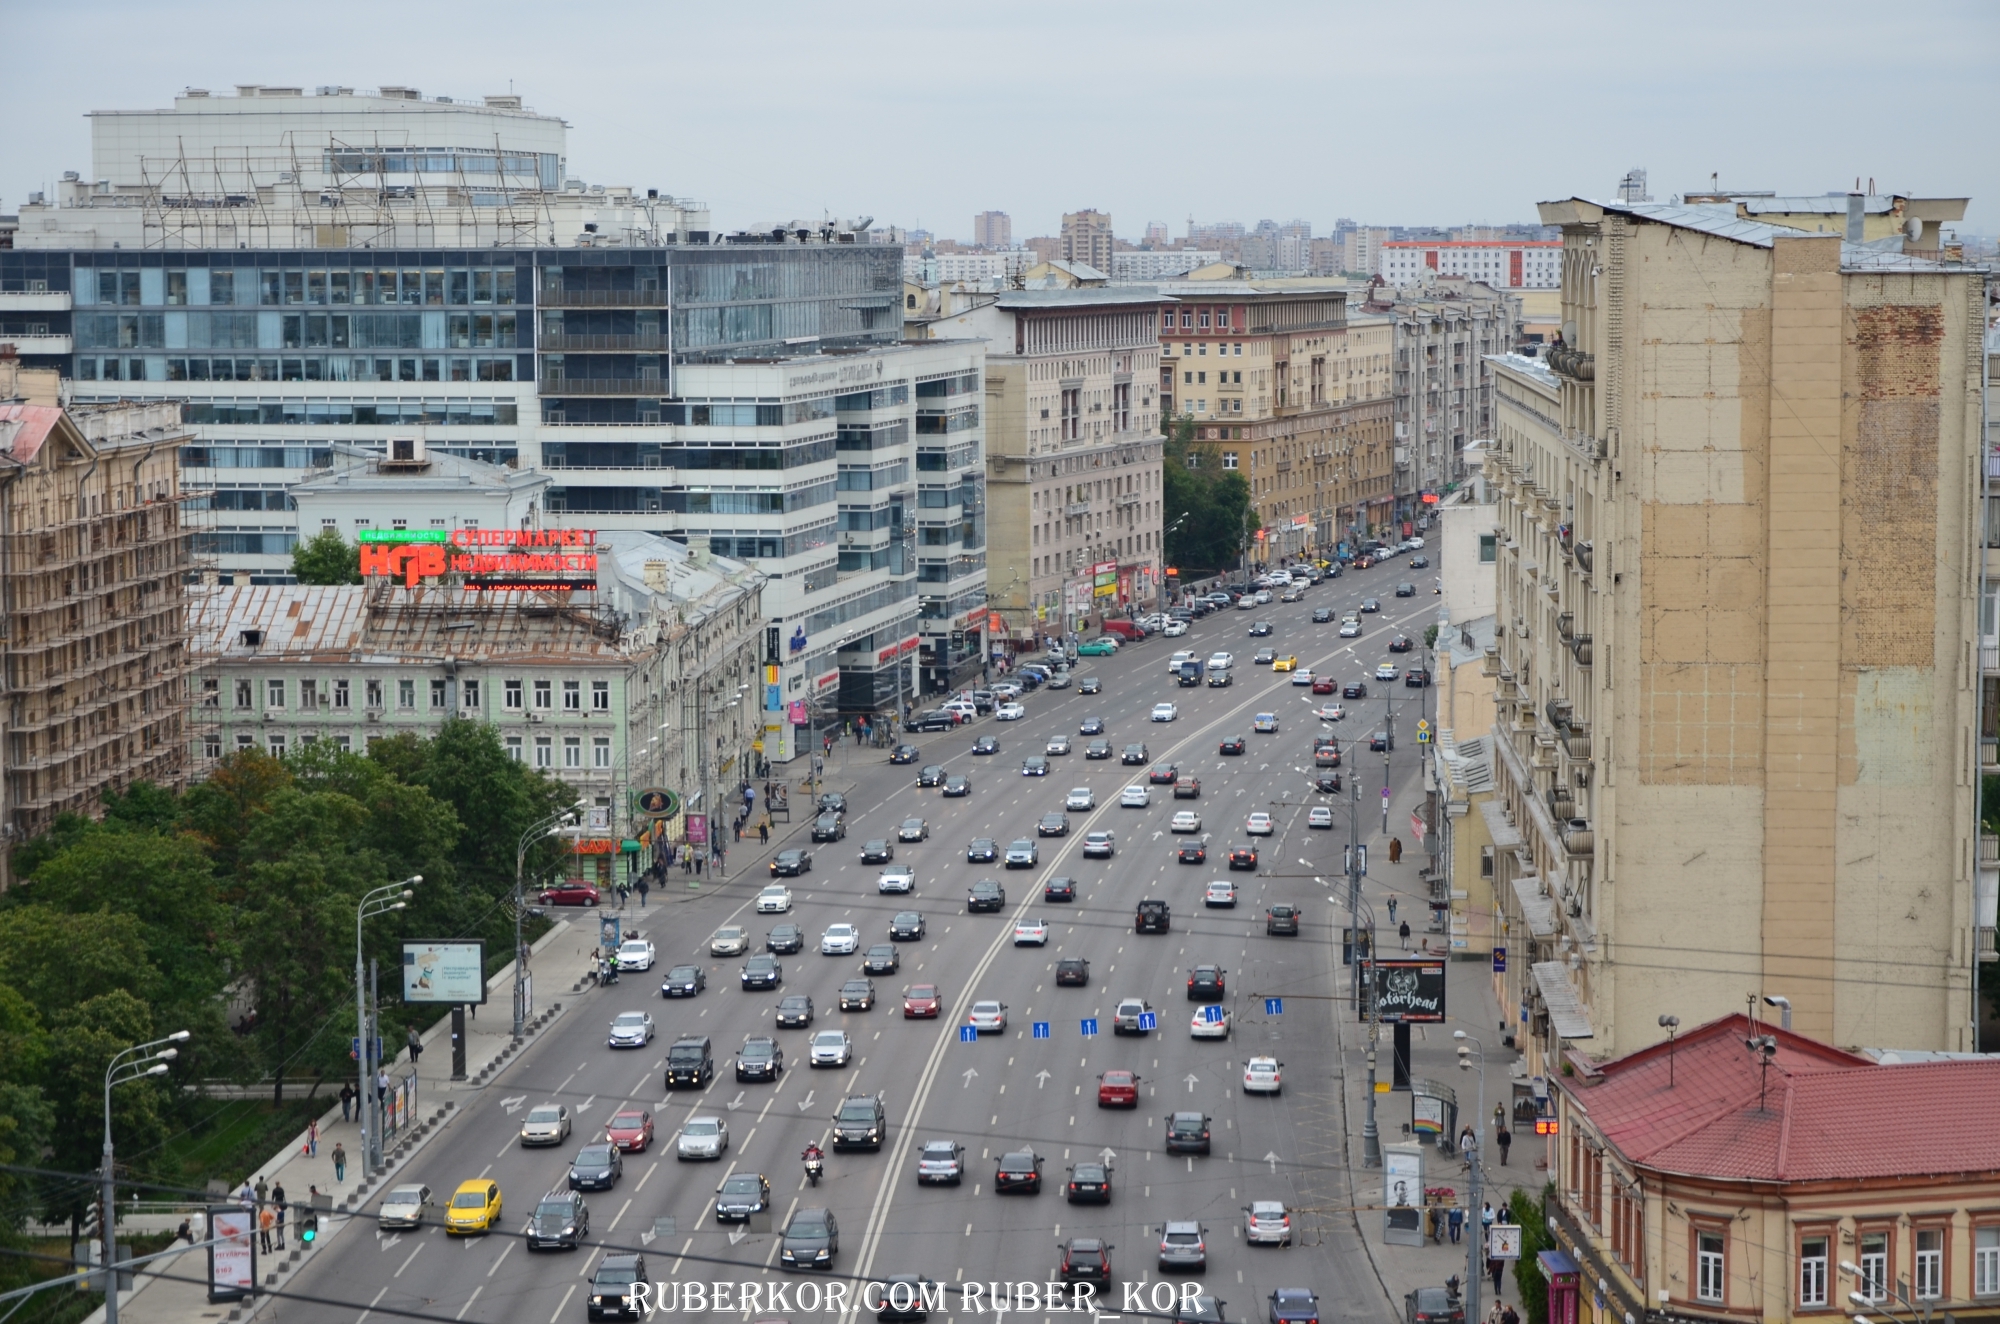 Виды с Крышт жилого дома с рекламным щитом Peugeot Москва 2014г.